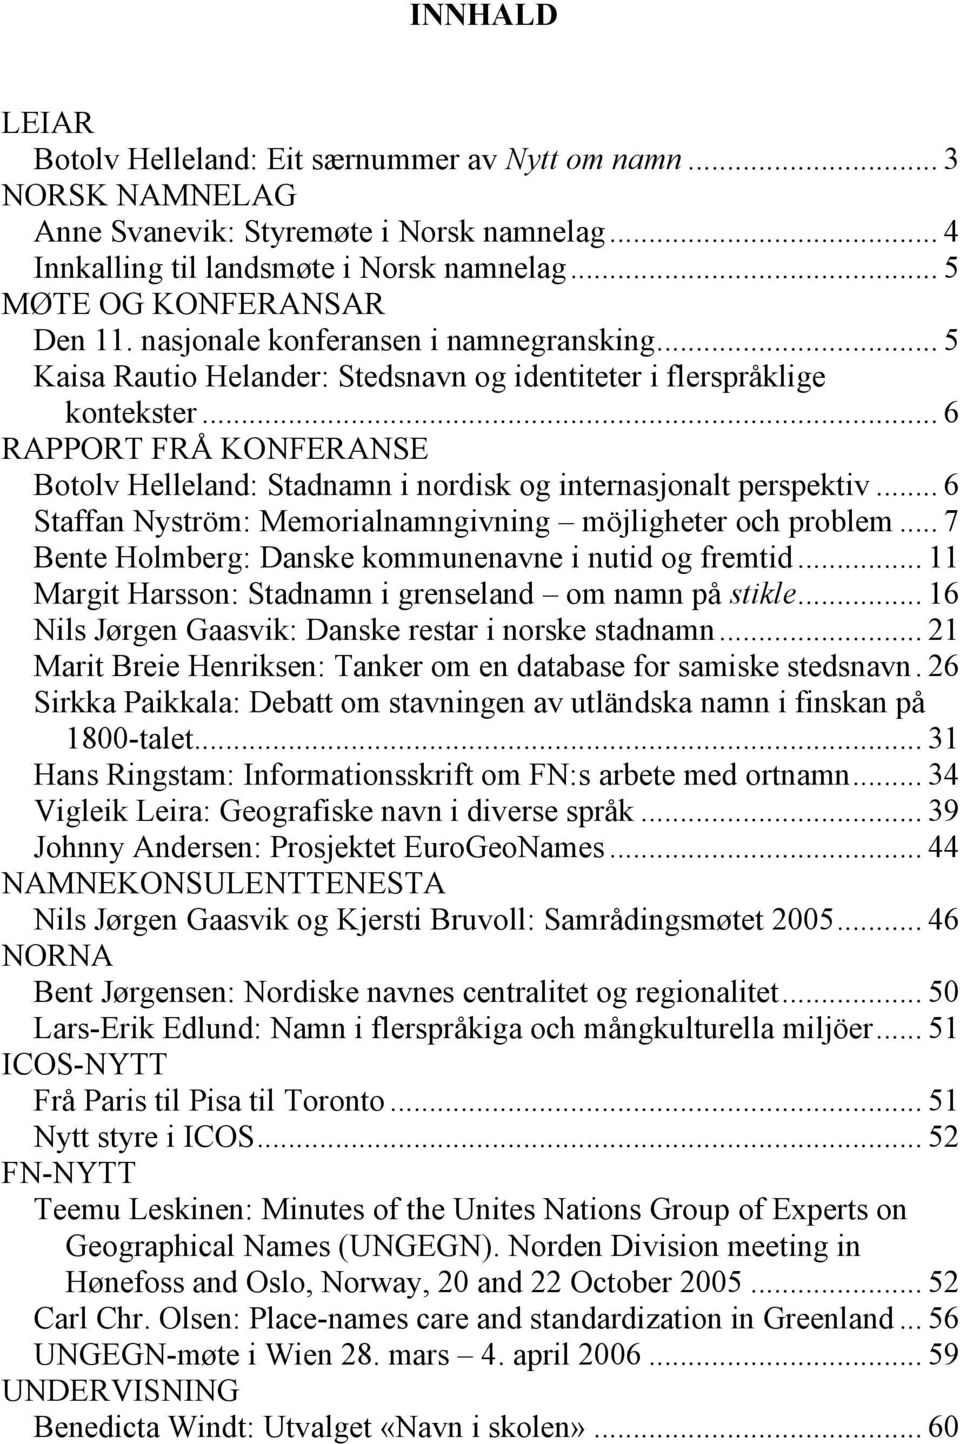 .. 6 RAPPORT FRÅ KONFERANSE Botolv Helleland: Stadnamn i nordisk og internasjonalt perspektiv... 6 Staffan Nyström: Memorialnamngivning möjligheter och problem.